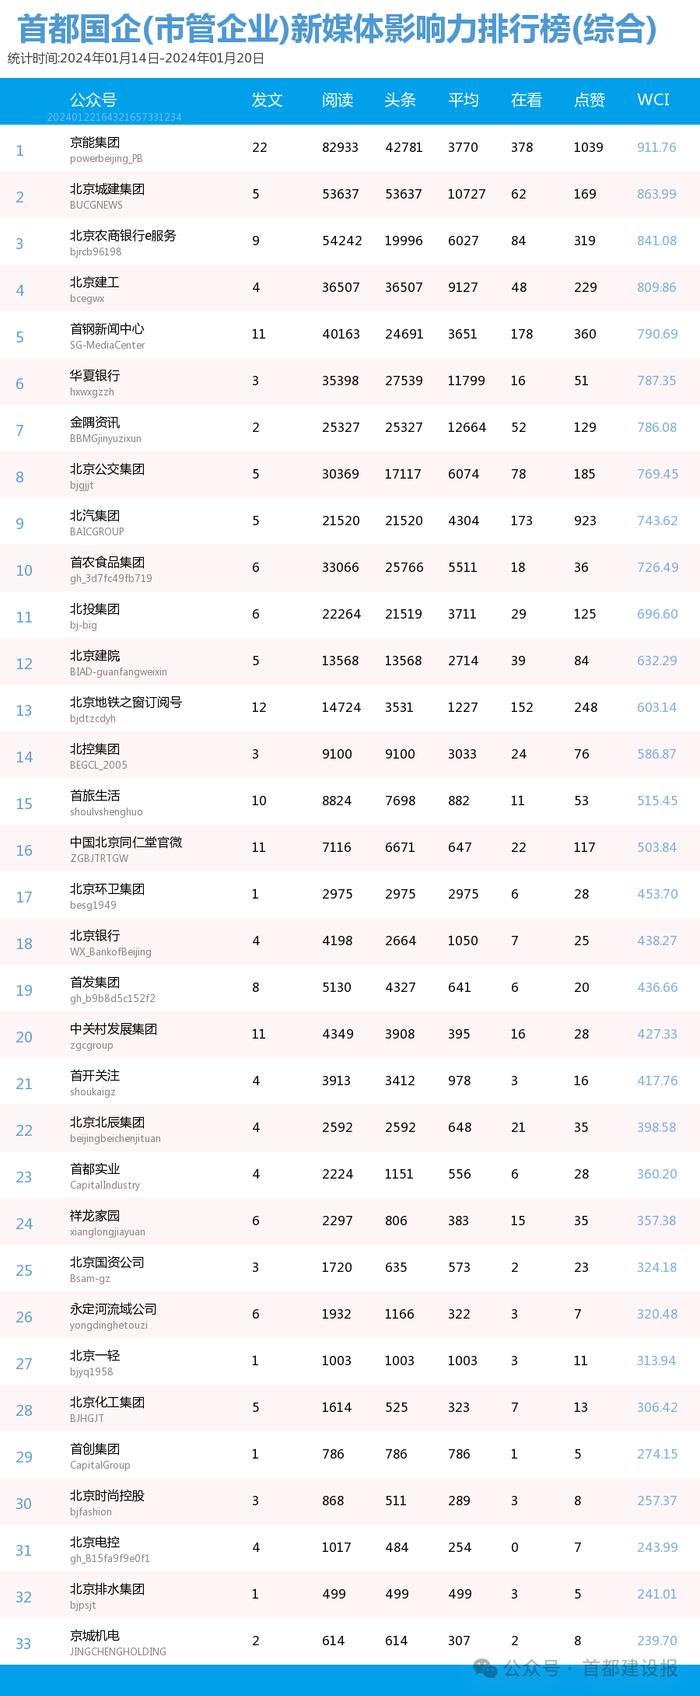 【北京国企新媒体影响力排行榜】1月周榜(1.14-1.20)第391期